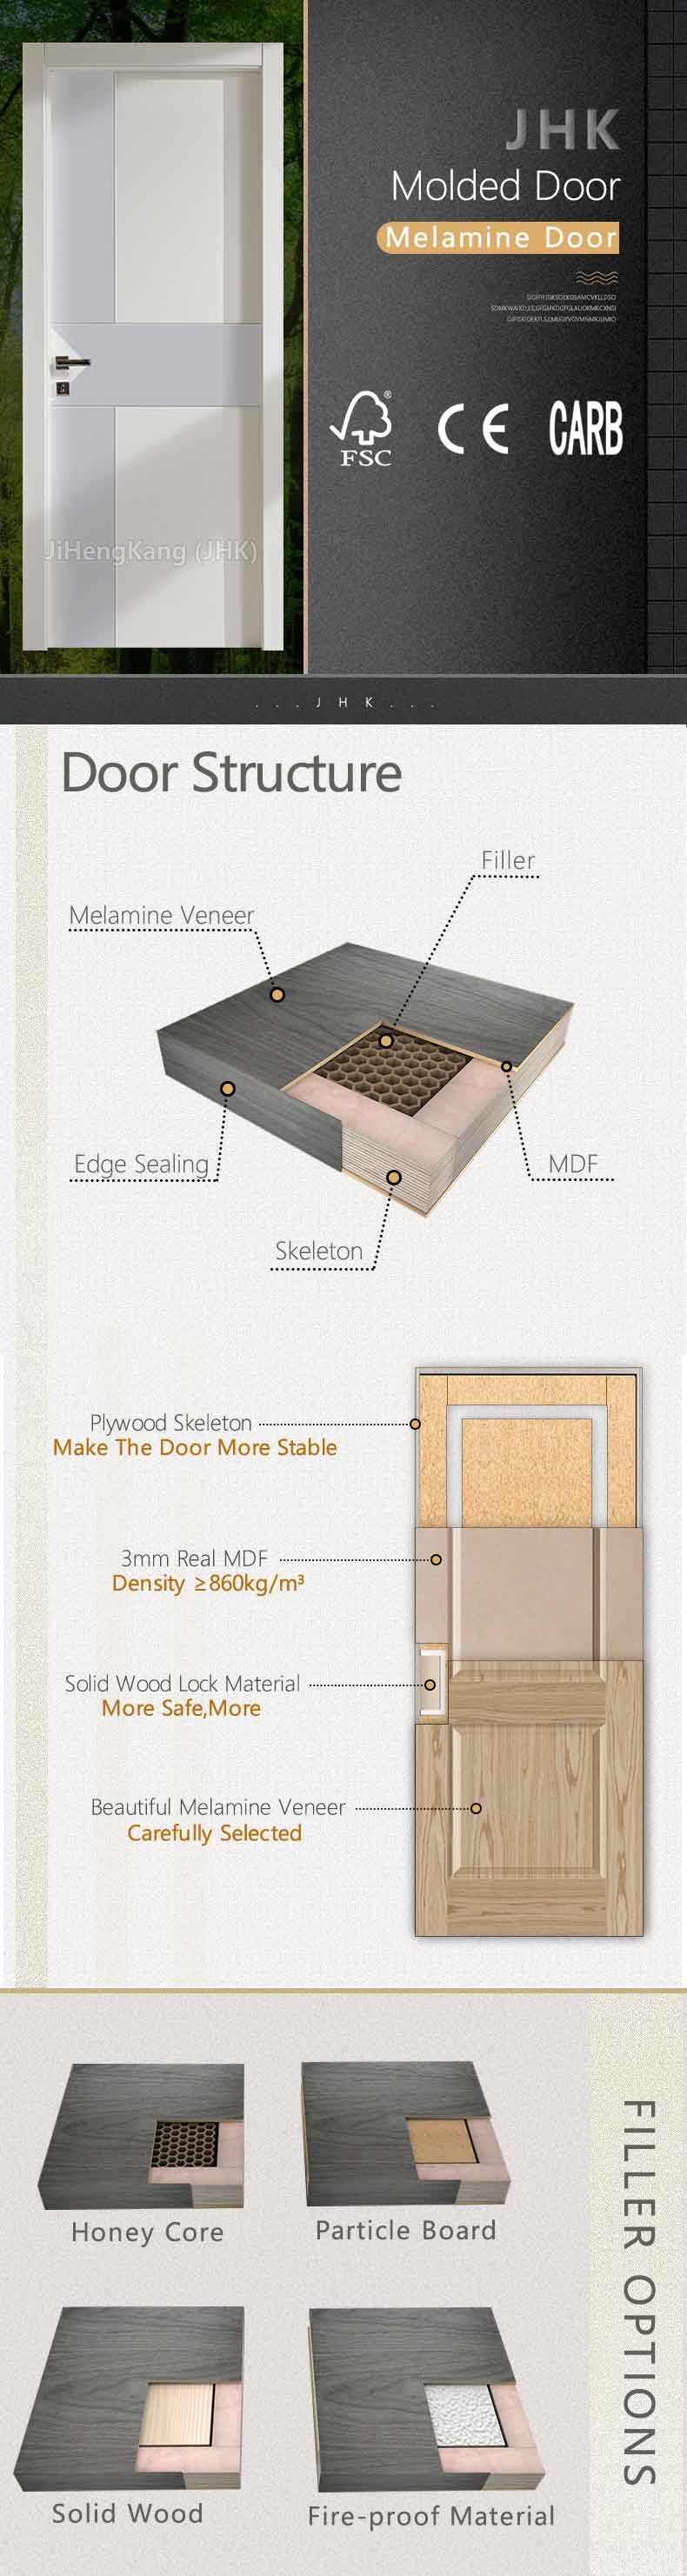 Jhk Toilet Door Wardrobe Laminated Solid Wood Core Melamine Door